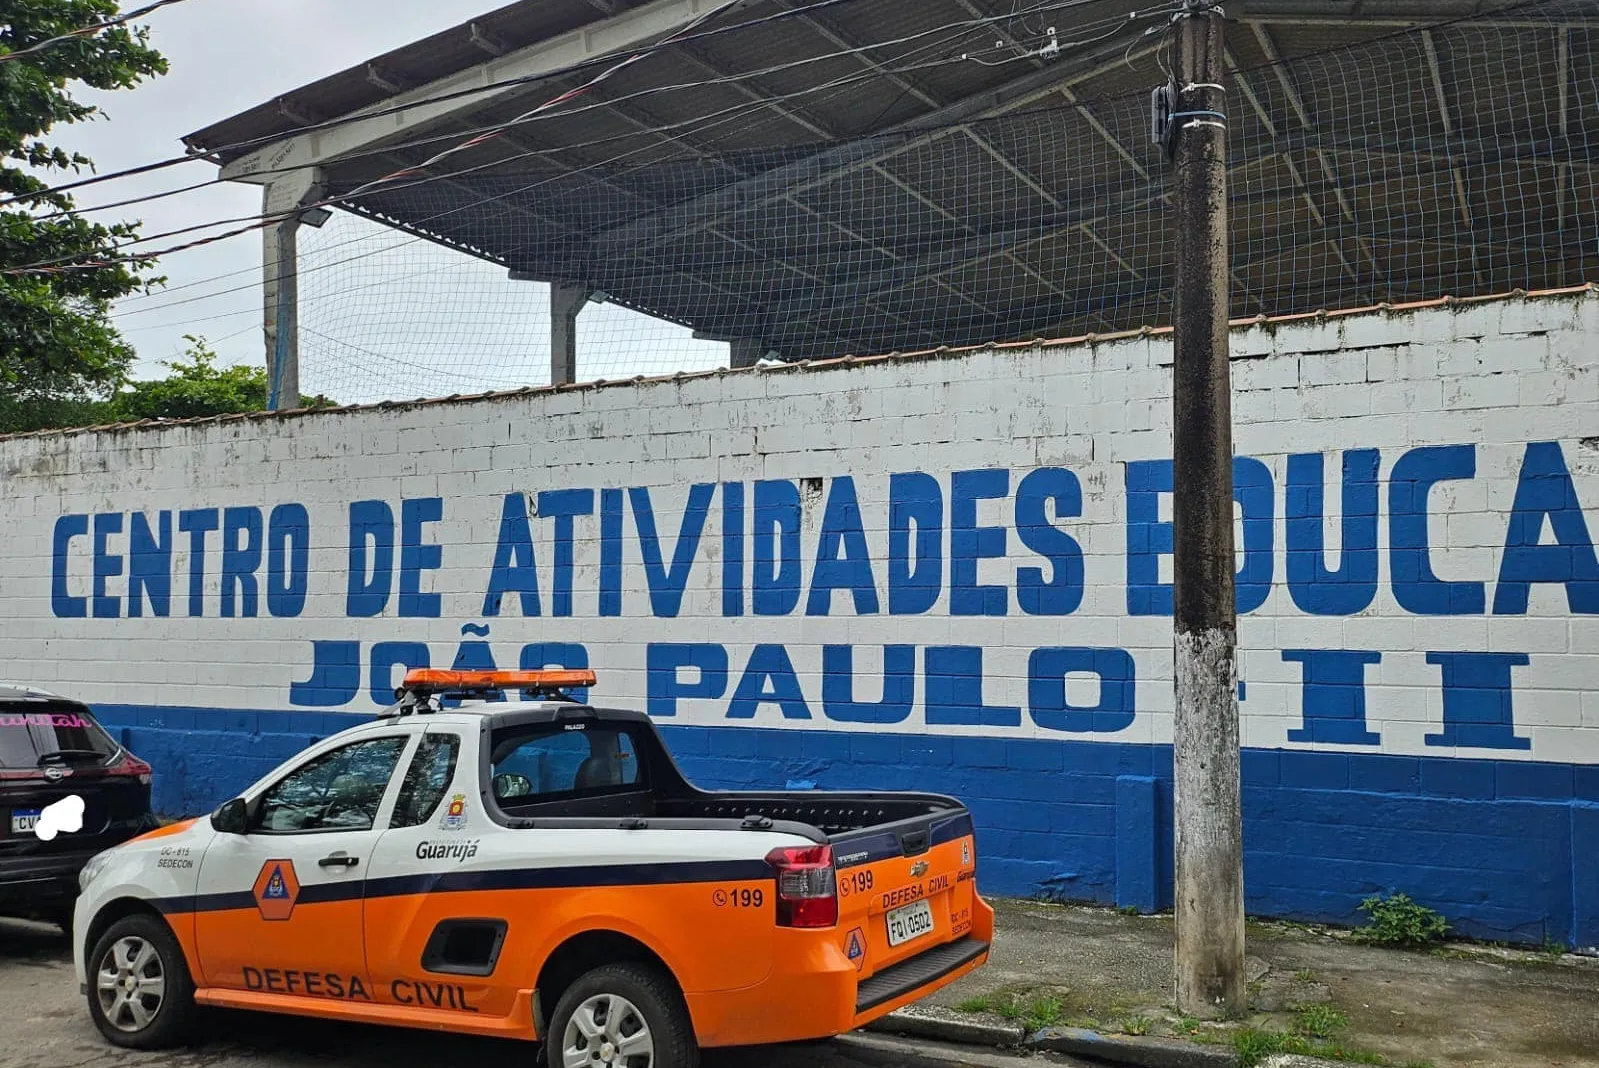 Caec está interditado desde fevereiro em Guarujá, Litoral de São Paulo